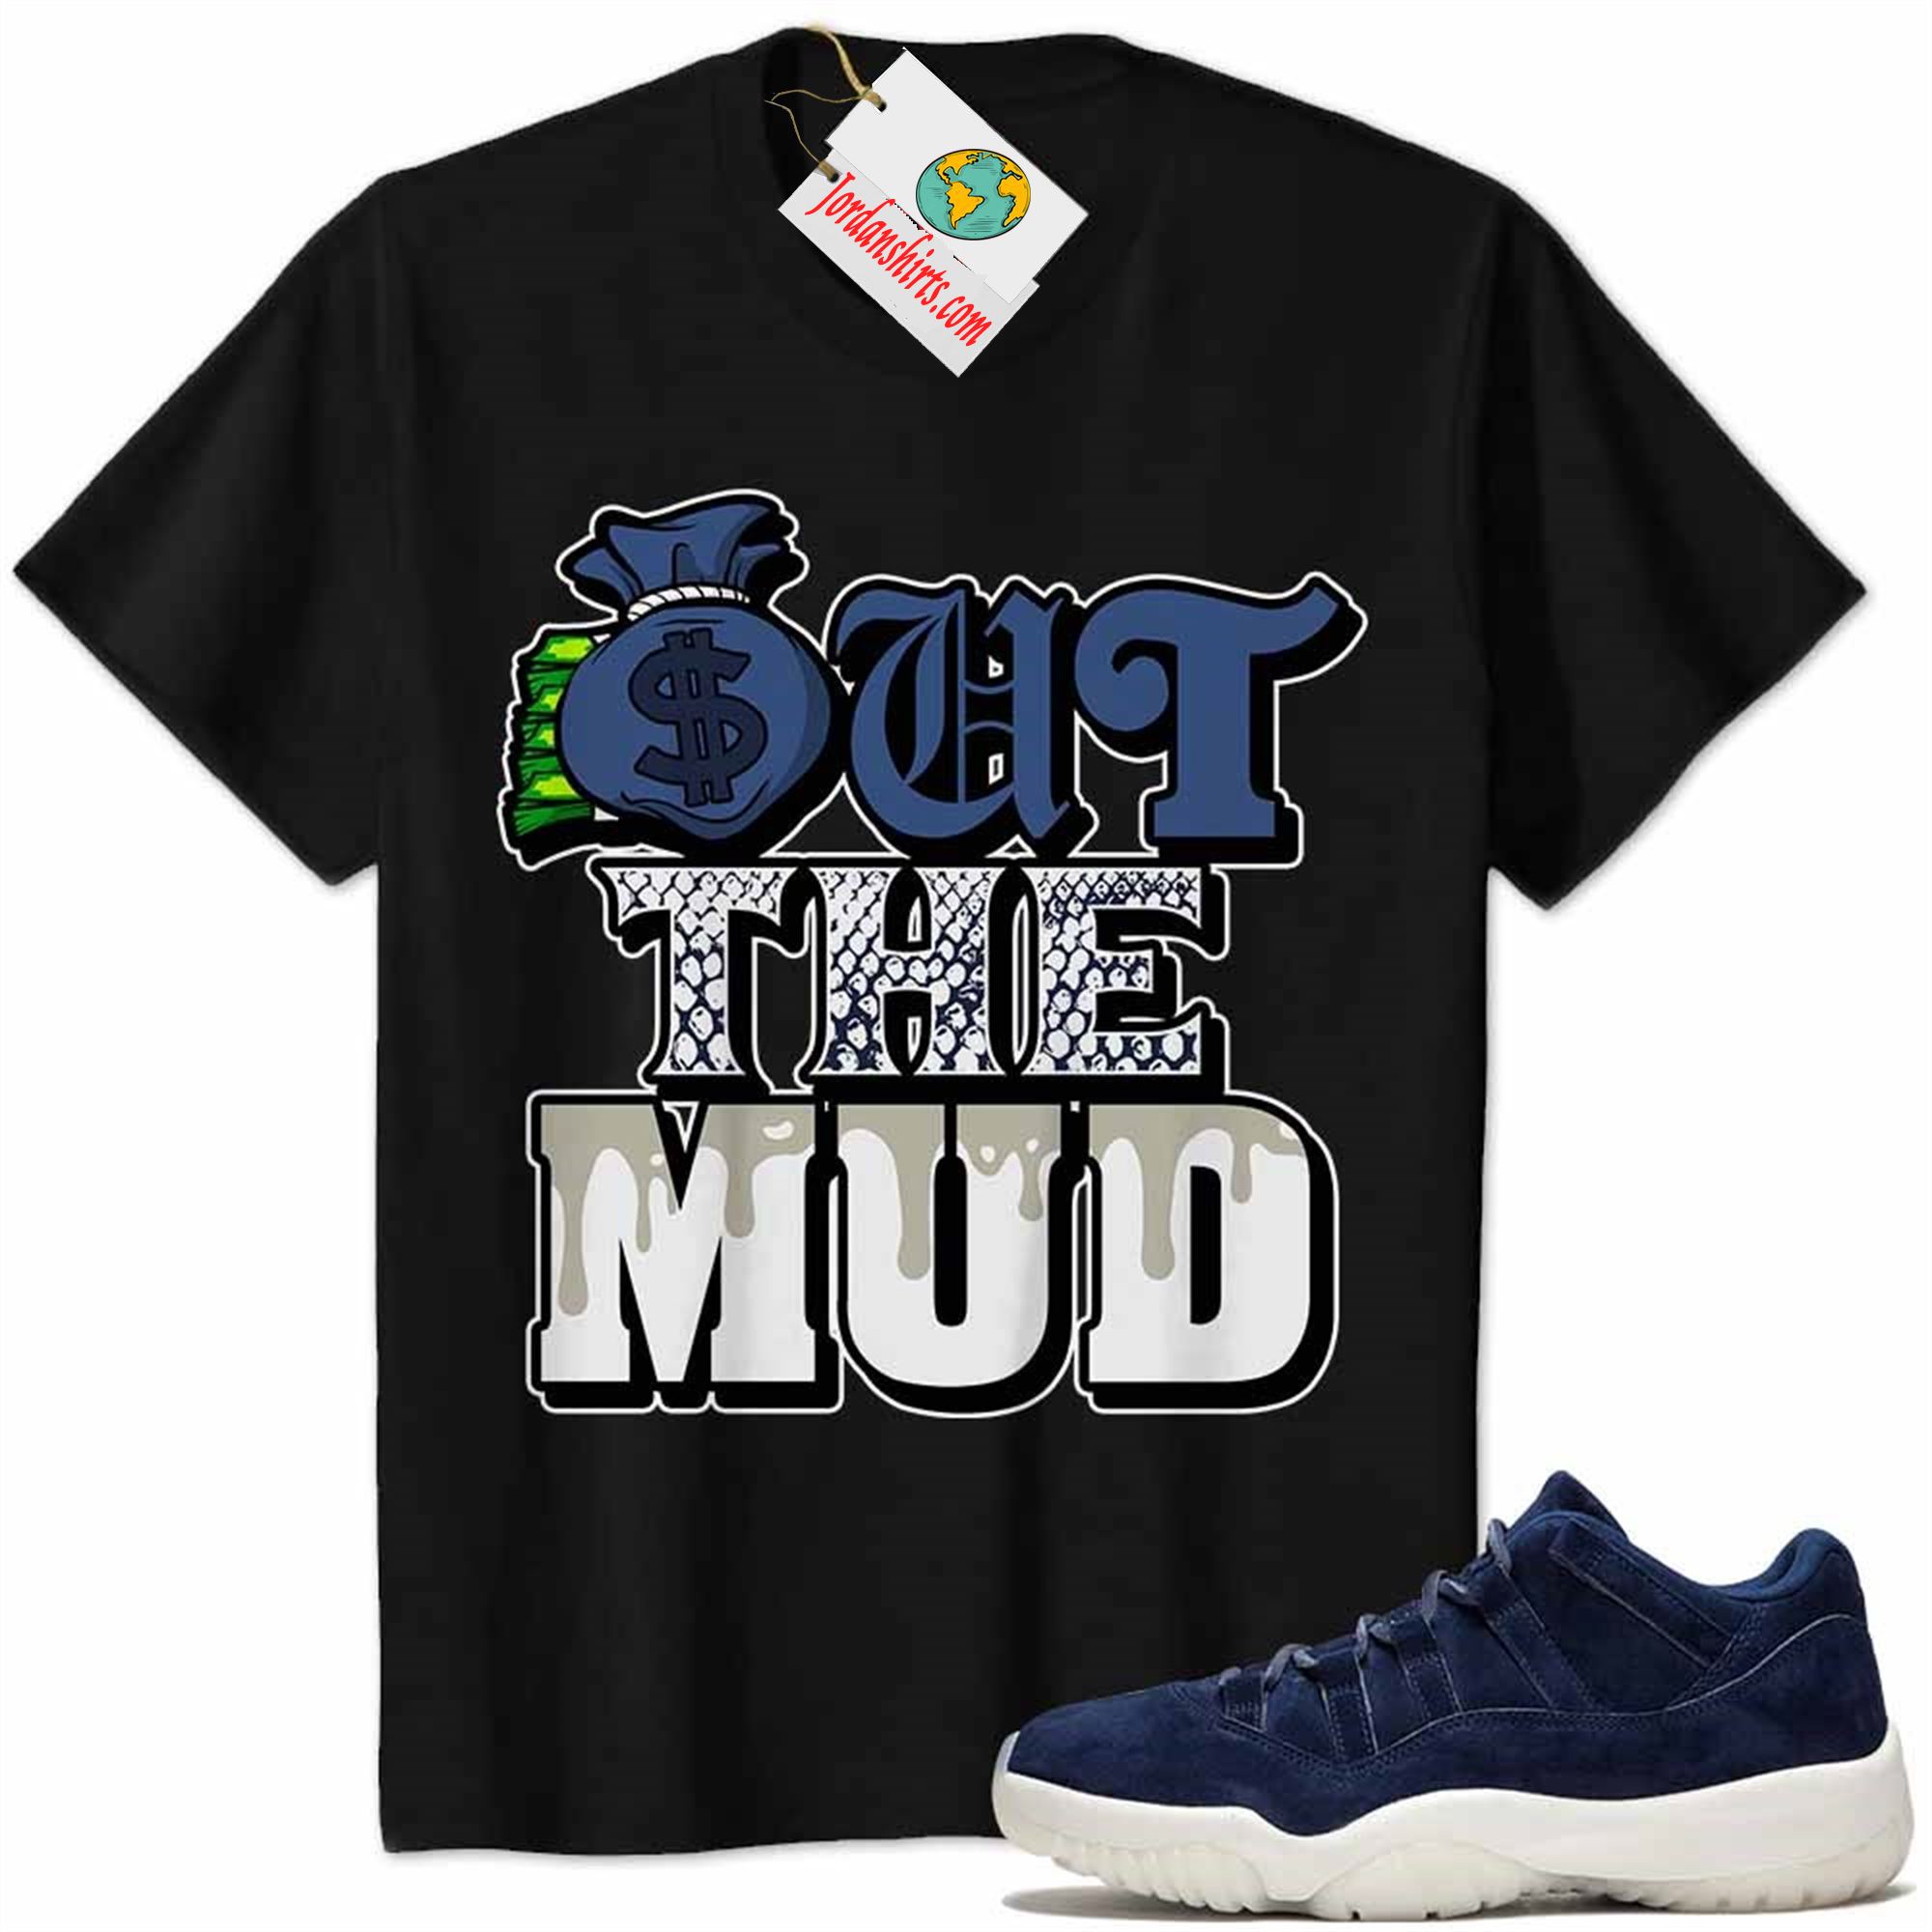 Jordan 11 Shirt, Jordan 11 Derek Jeter Shirt Out The Mud Money Bag Black Plus Size Up To 5xl